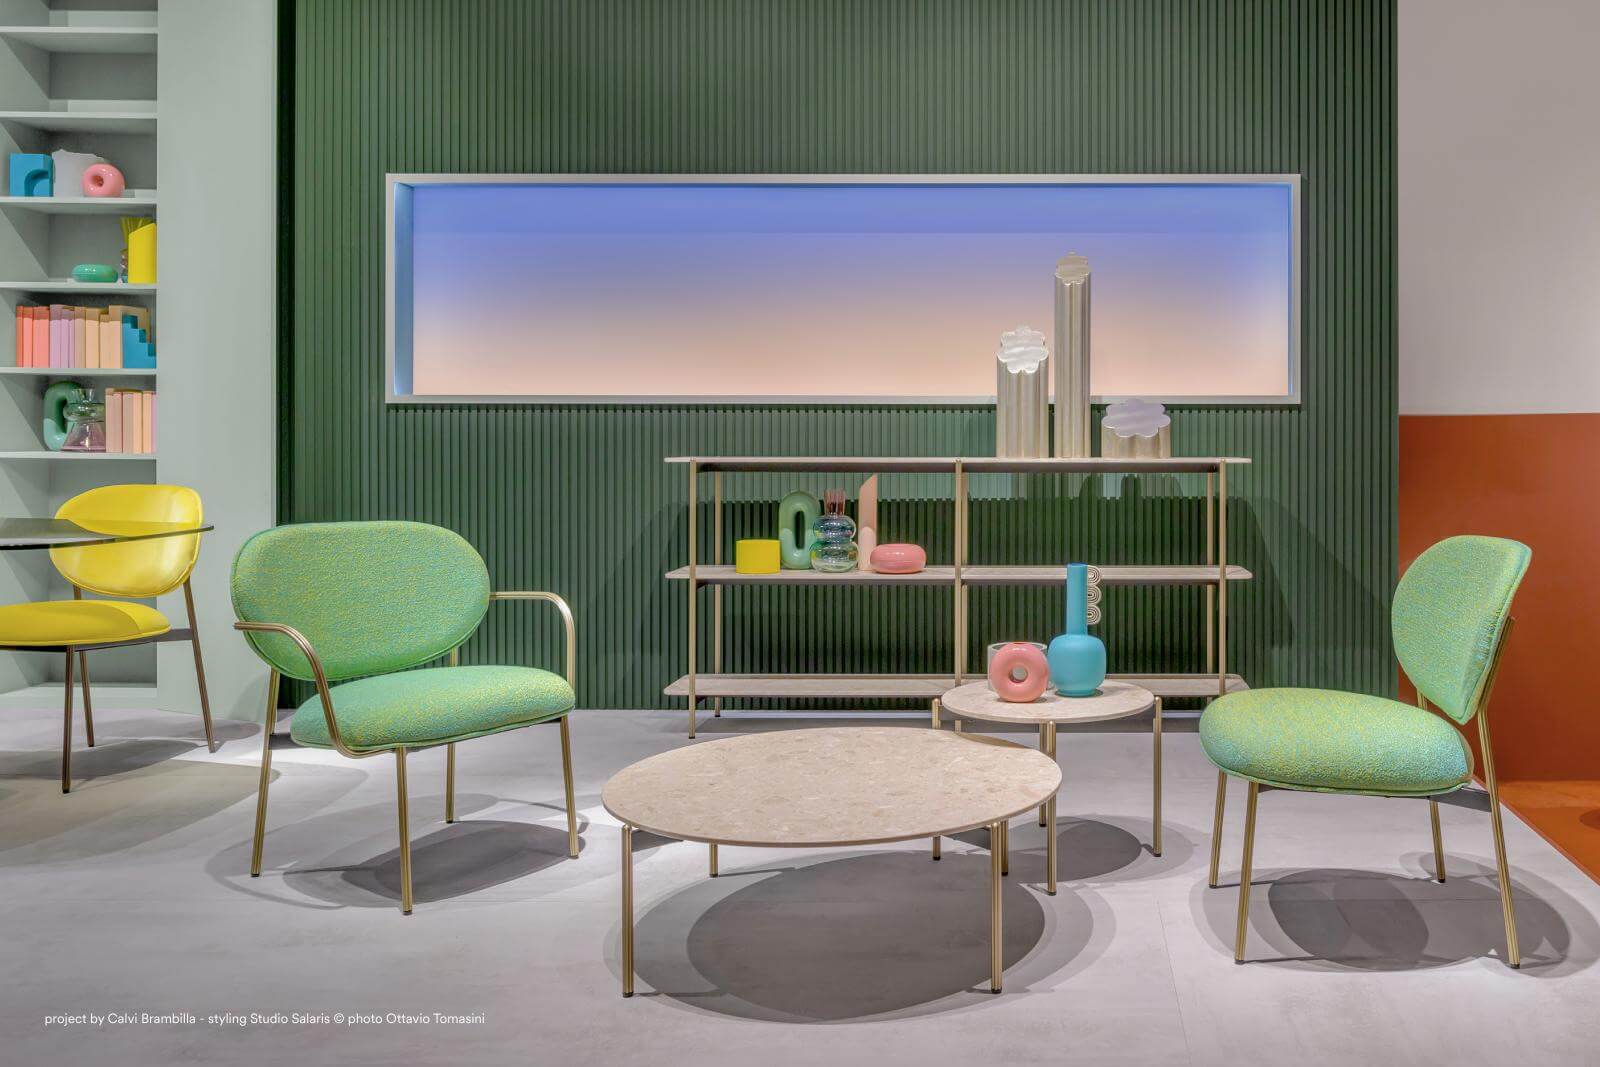 Ambientazione di design futurista, sedie verdi ai lati, tavolino grigio al centro, finestra in background